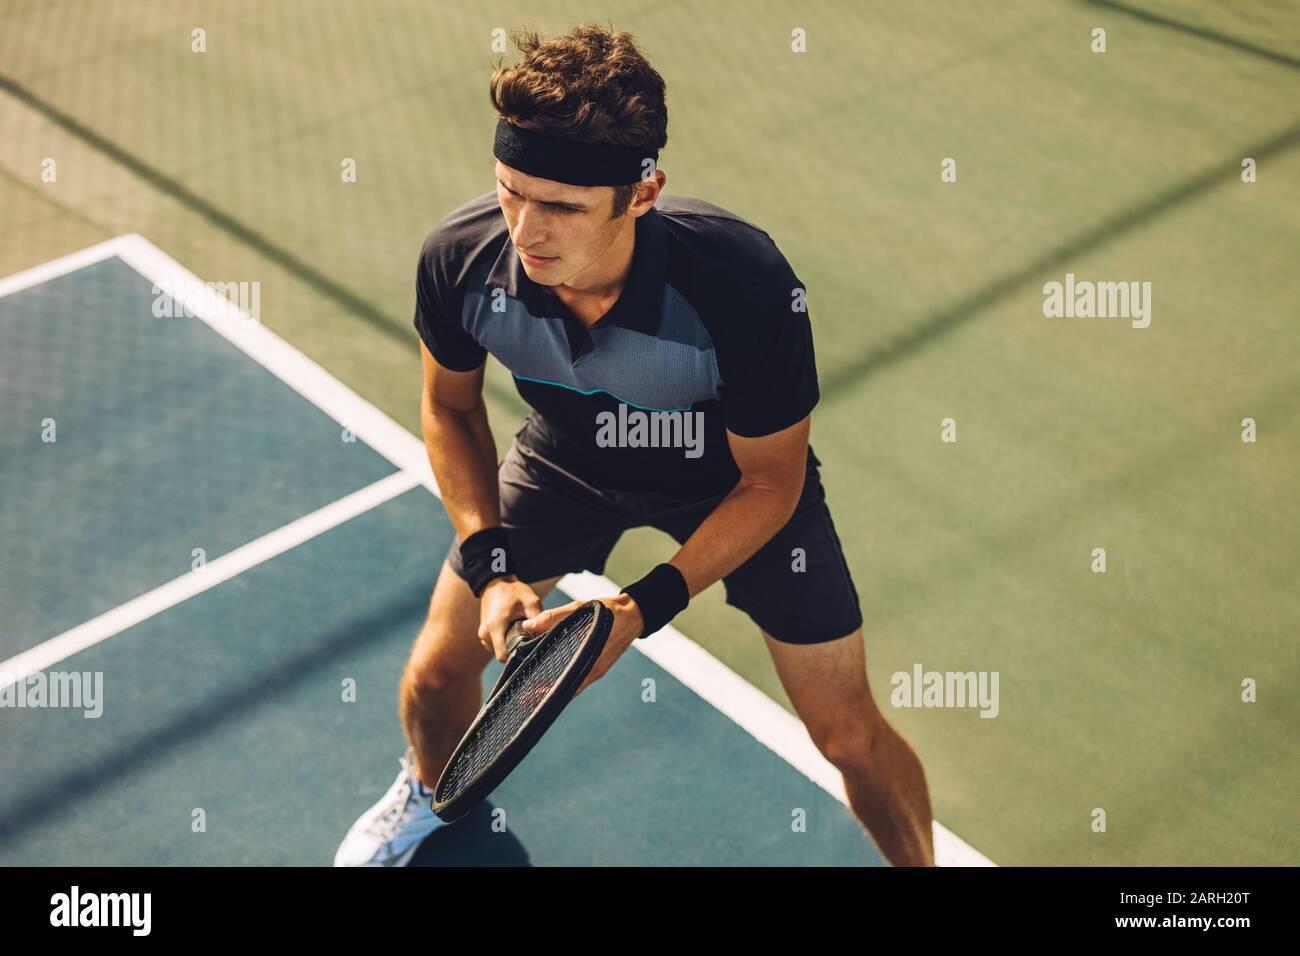 Joueur de tennis professionnel jouant un match sur le terrain dur. Sportif caucasien debout sur la ligne de base prêt à frapper le ballon sur le court de tennis. Banque D'Images